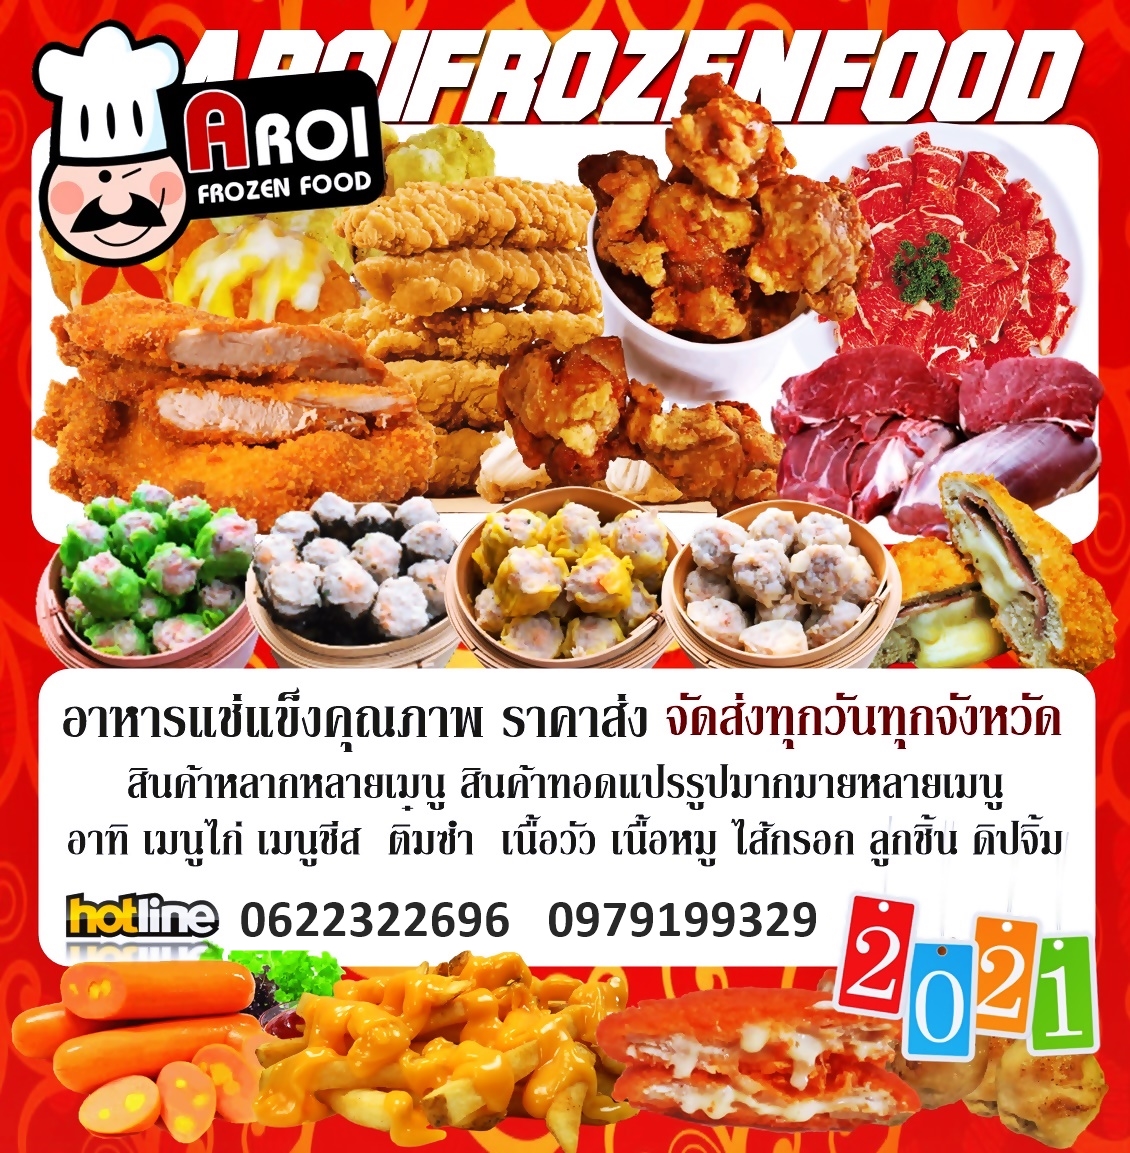 อาหารแช่แข็งขายส่ง,จำหน่ายอาหารแช่แข็งคุณภาพ,aroifrozenfood2019